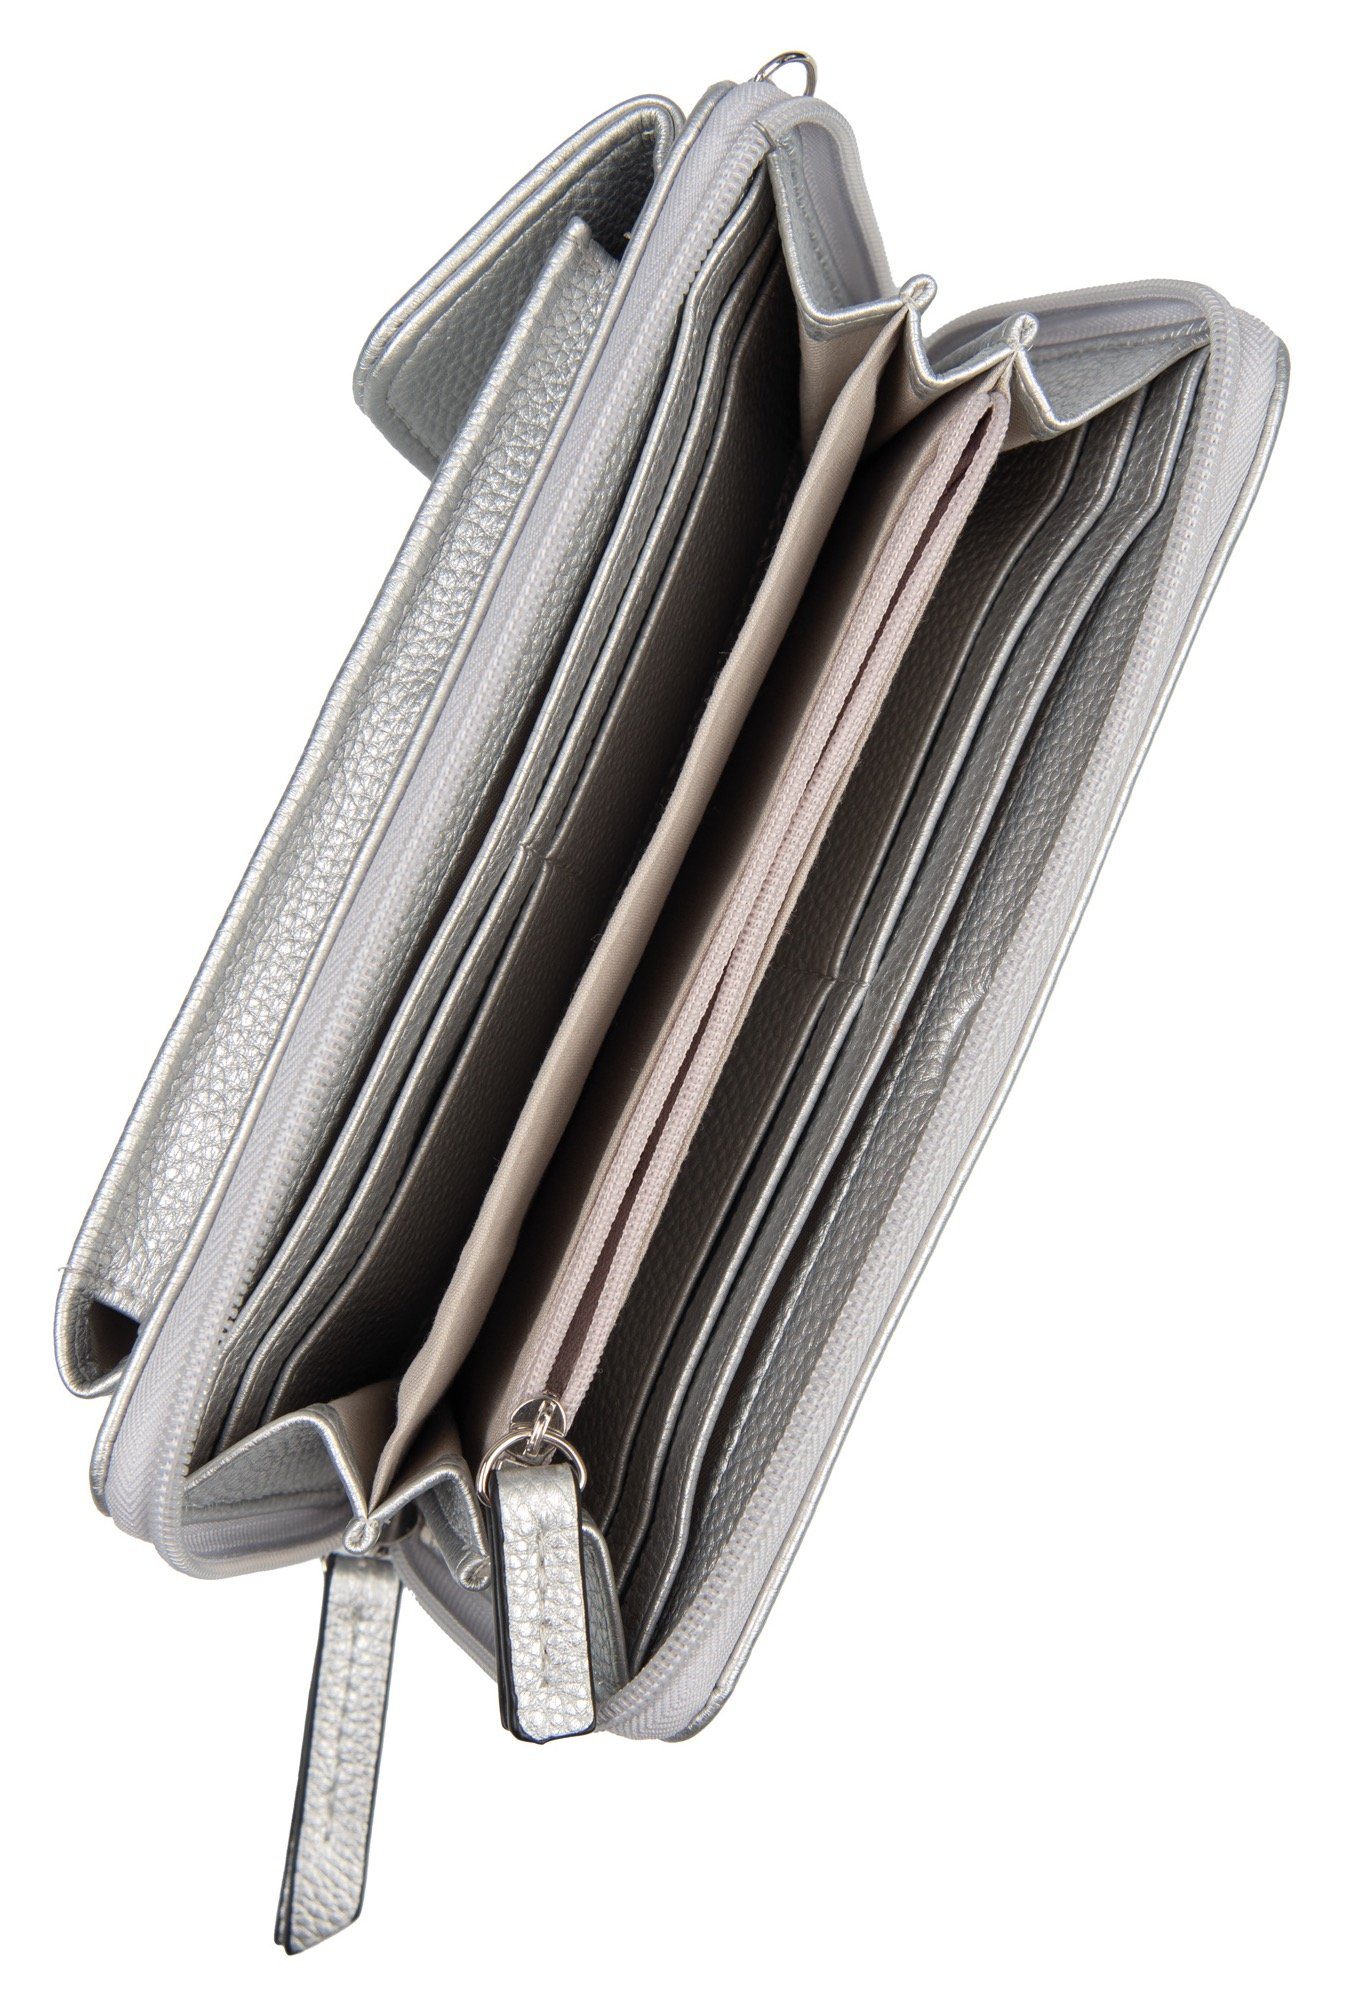 TOM TAILOR Geldbörse Außenfach geräumigem XL, mit Long silberfarben wallet ELA zip